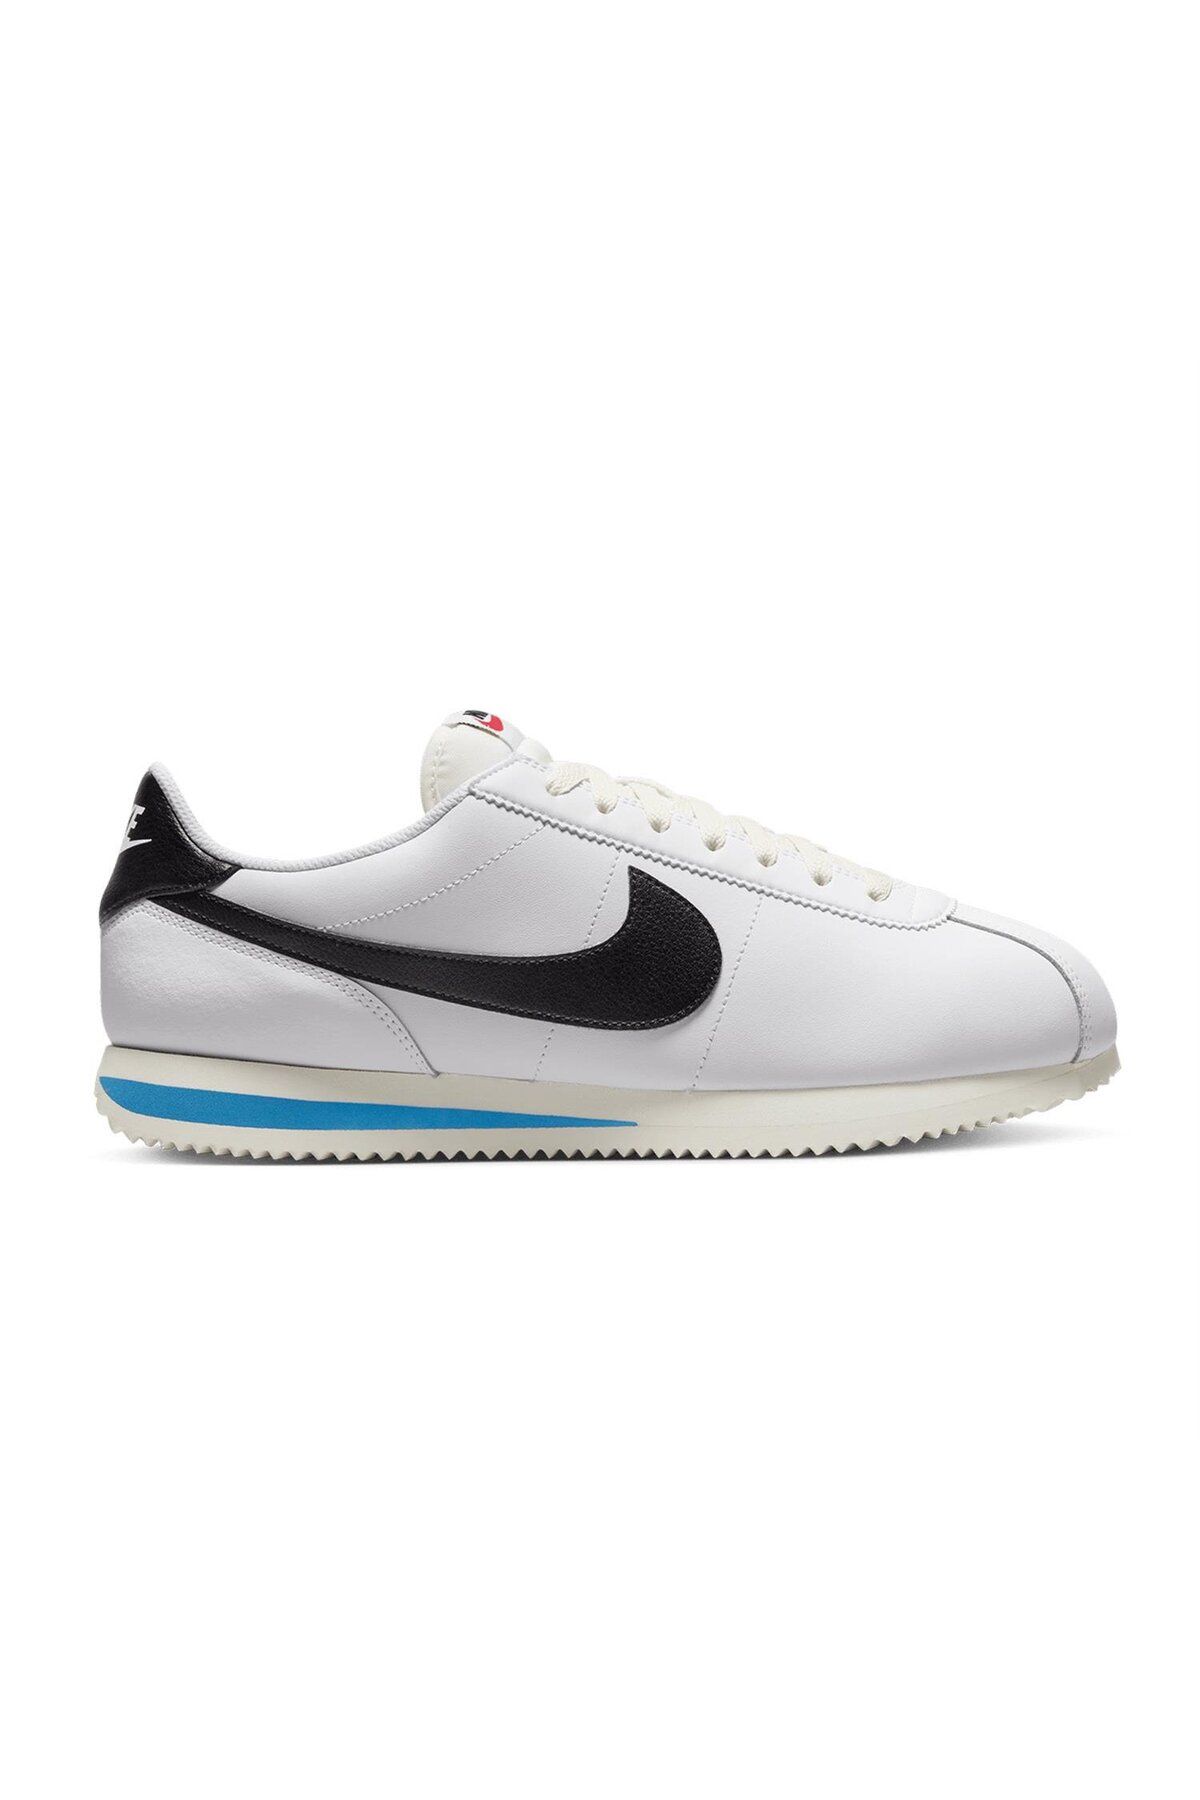 Nike Cortez Erkek Ayakkabı Dm4044-100